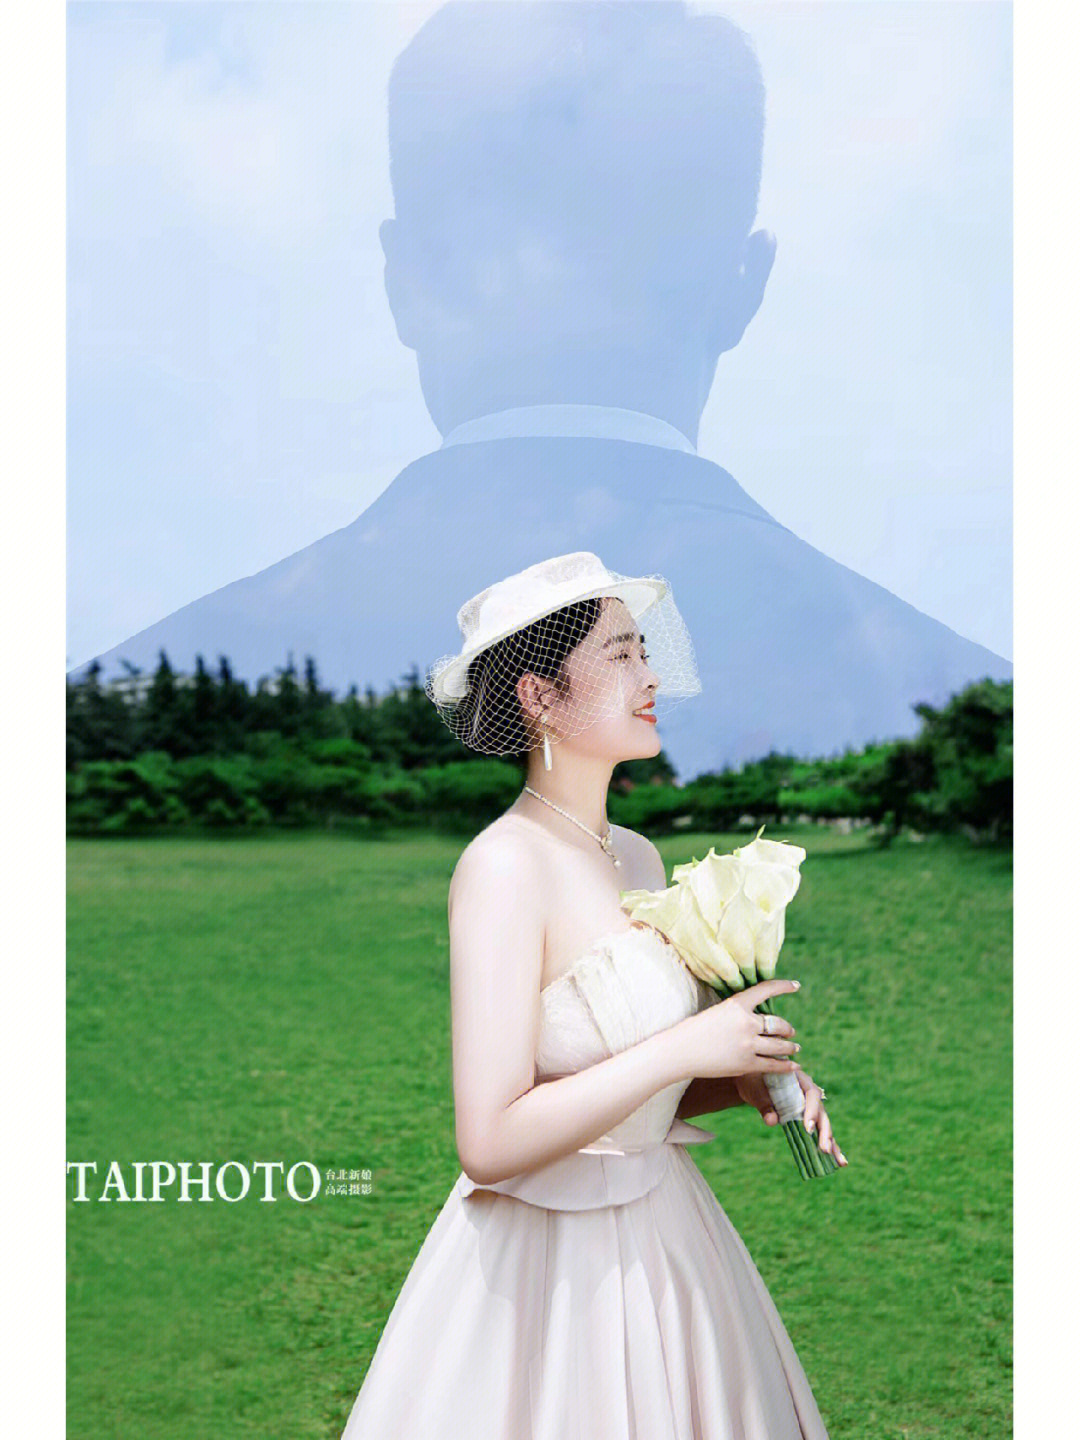 临沂台北新娘婚纱摄影